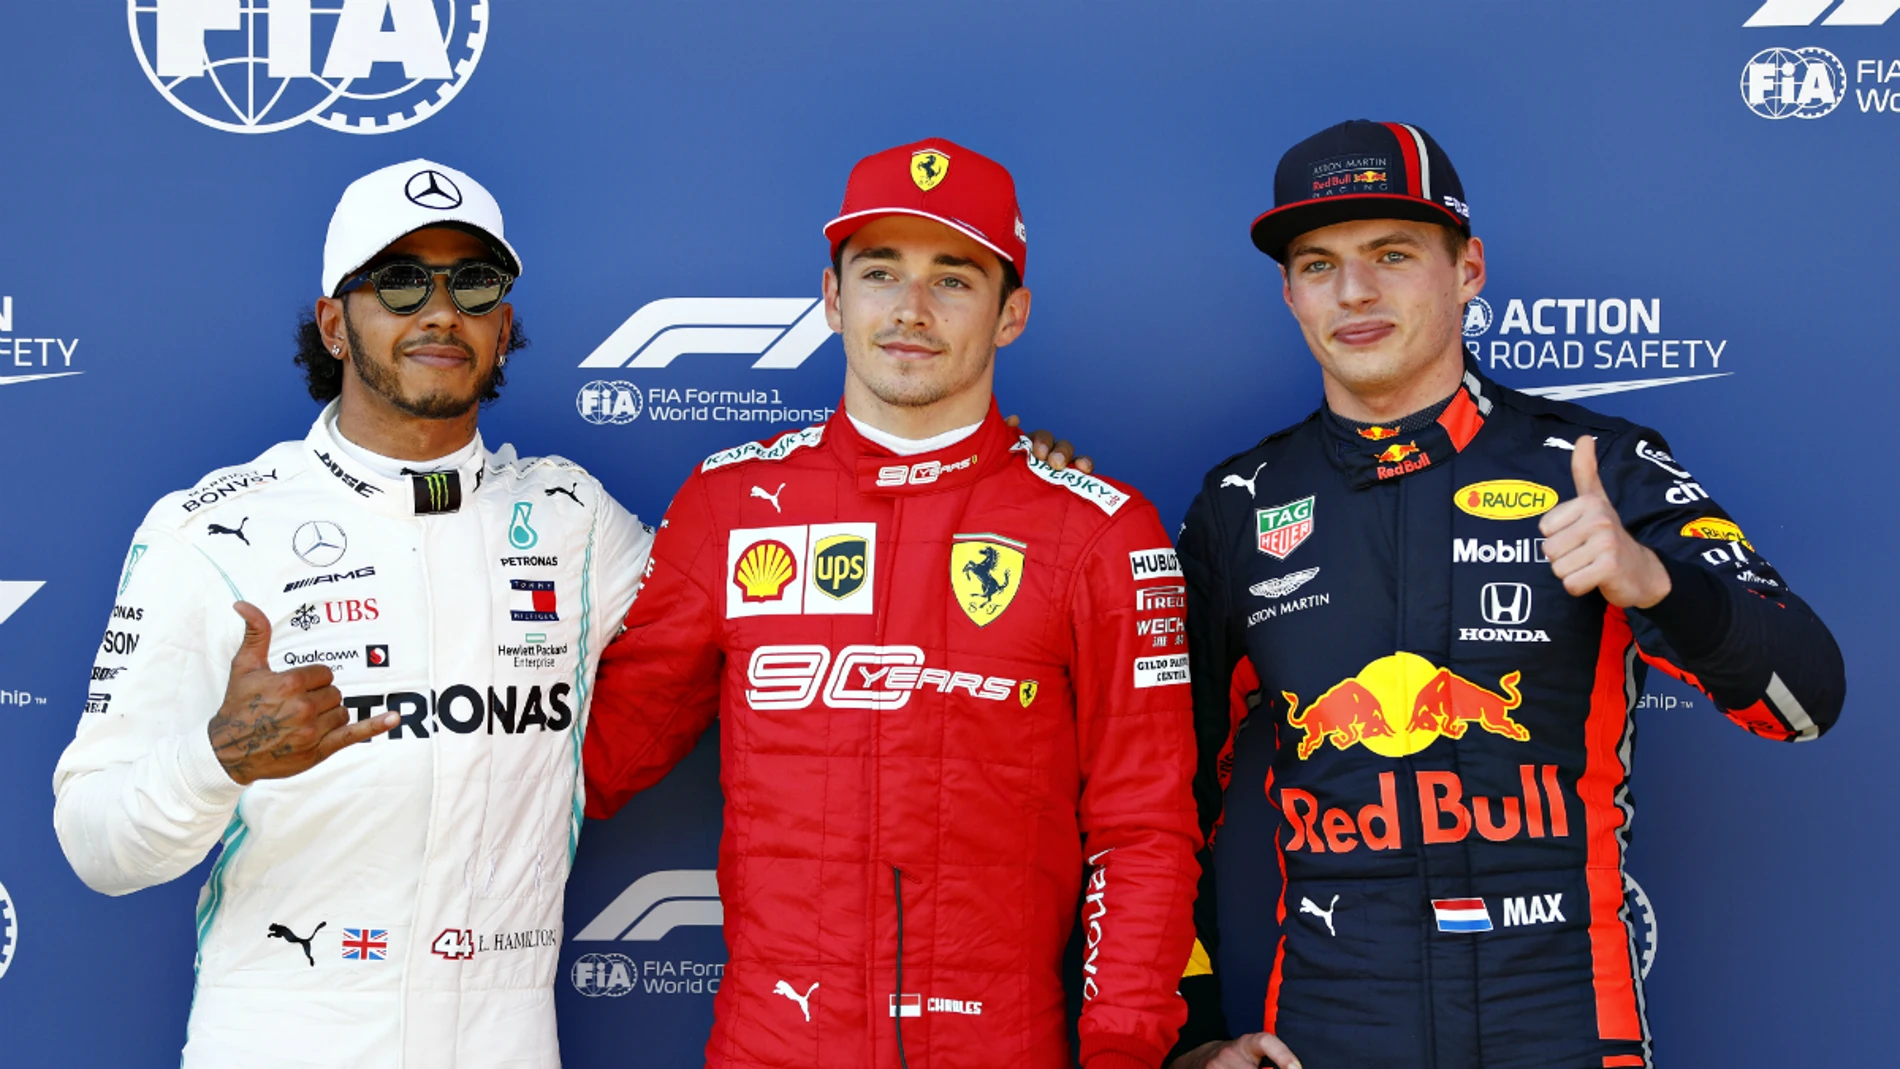 Hamilton, Leclerc y Verstpapen